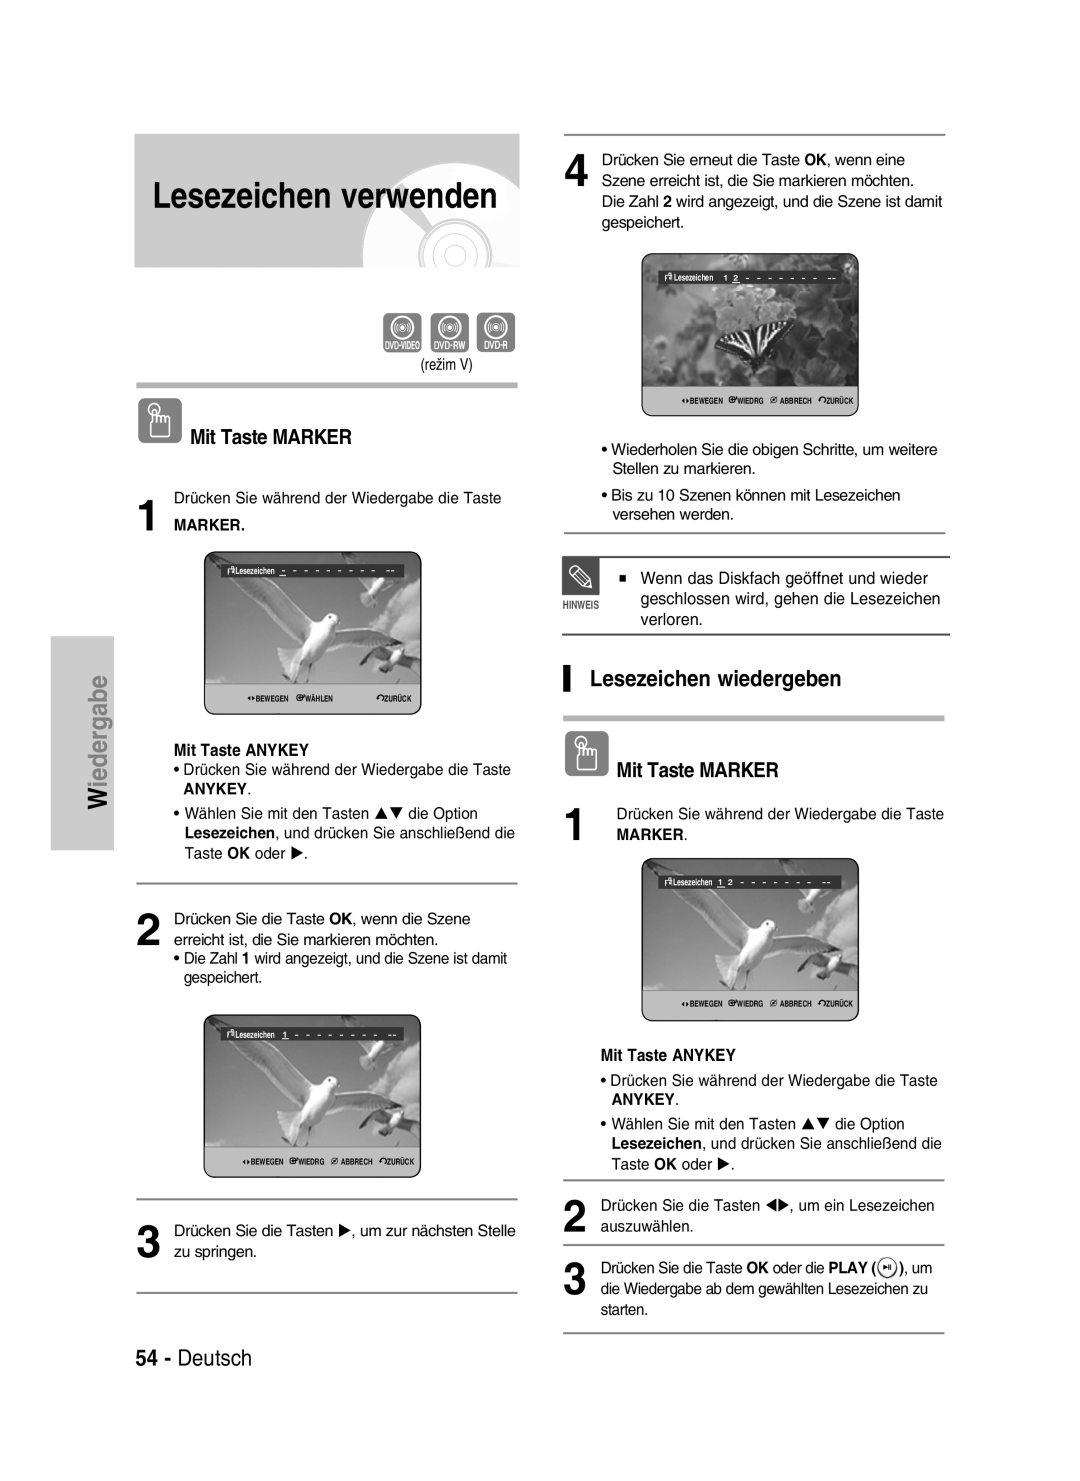 Samsung DVD-HR734/XEG manual Lesezeichen verwenden, Lesezeichen wiedergeben, Deutsch, iedergabeW, Mit Taste MARKER, Marker 